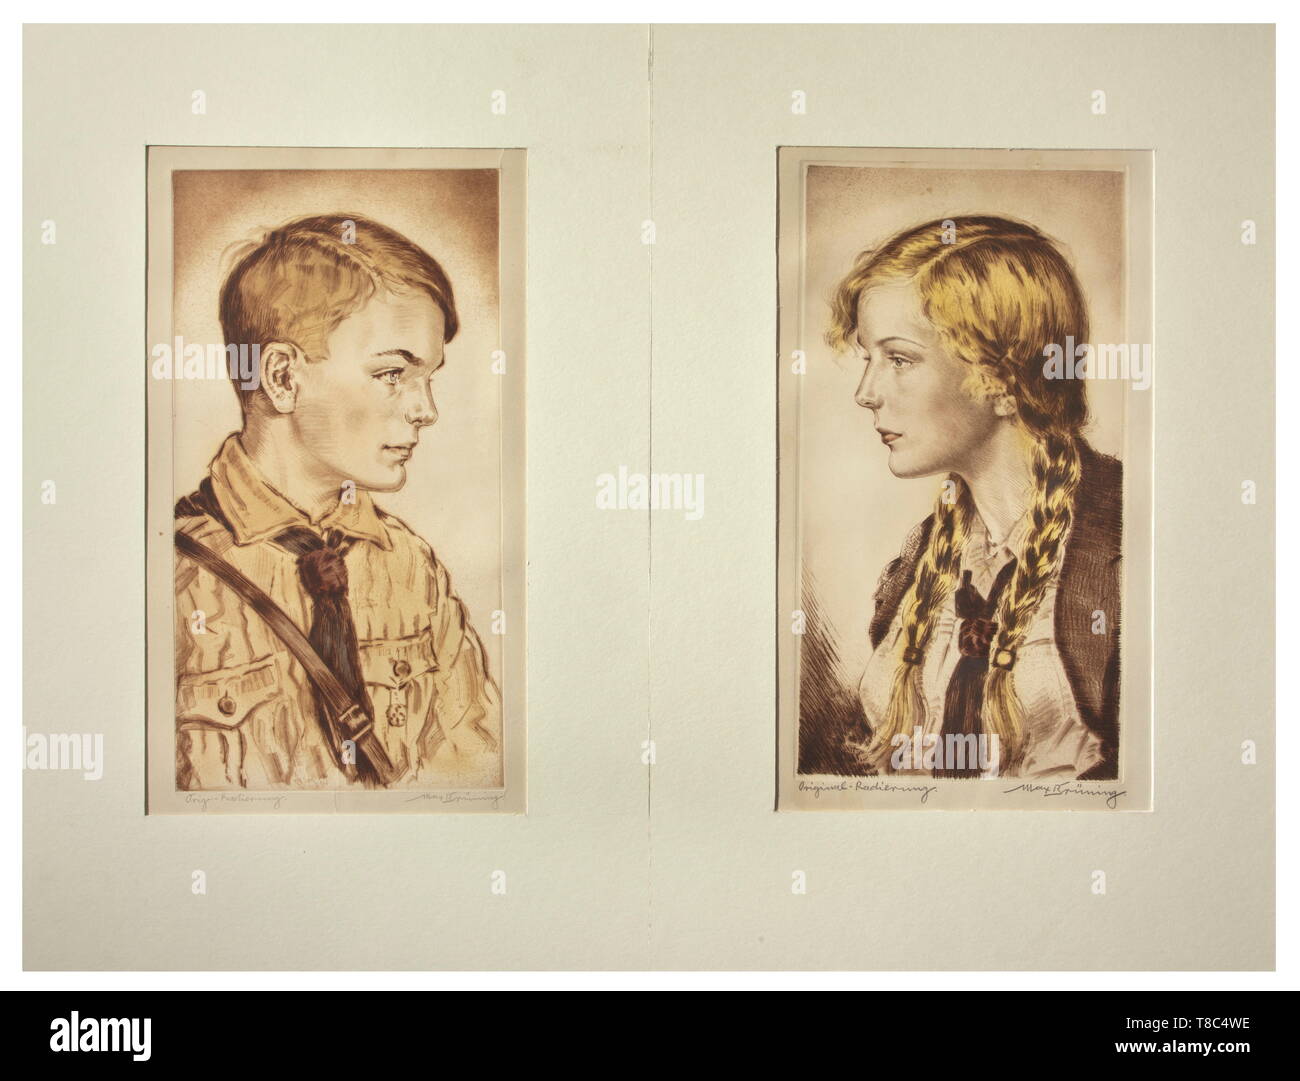 Brüning max (1887 - 1968) - Deux gravures Portrait d'une jeunesse d'Hitler et une fille BDM. Soit travailler main signée au crayon sur le bord inférieur 'Orig.-Radierung' et 'Max' Brüning. Des signes de vieillissement. Taille totale de feuilles circa 33 x 52 cm chaque. Historique Historique, monté., 20e siècle, 1930, 1940, beaux-arts, l'art, NS, le National-socialisme, le Nazisme, Troisième Reich, l'Empire allemand, l'Allemagne national-socialiste,, Nazi, période nazie, Editorial-Use-seulement Banque D'Images